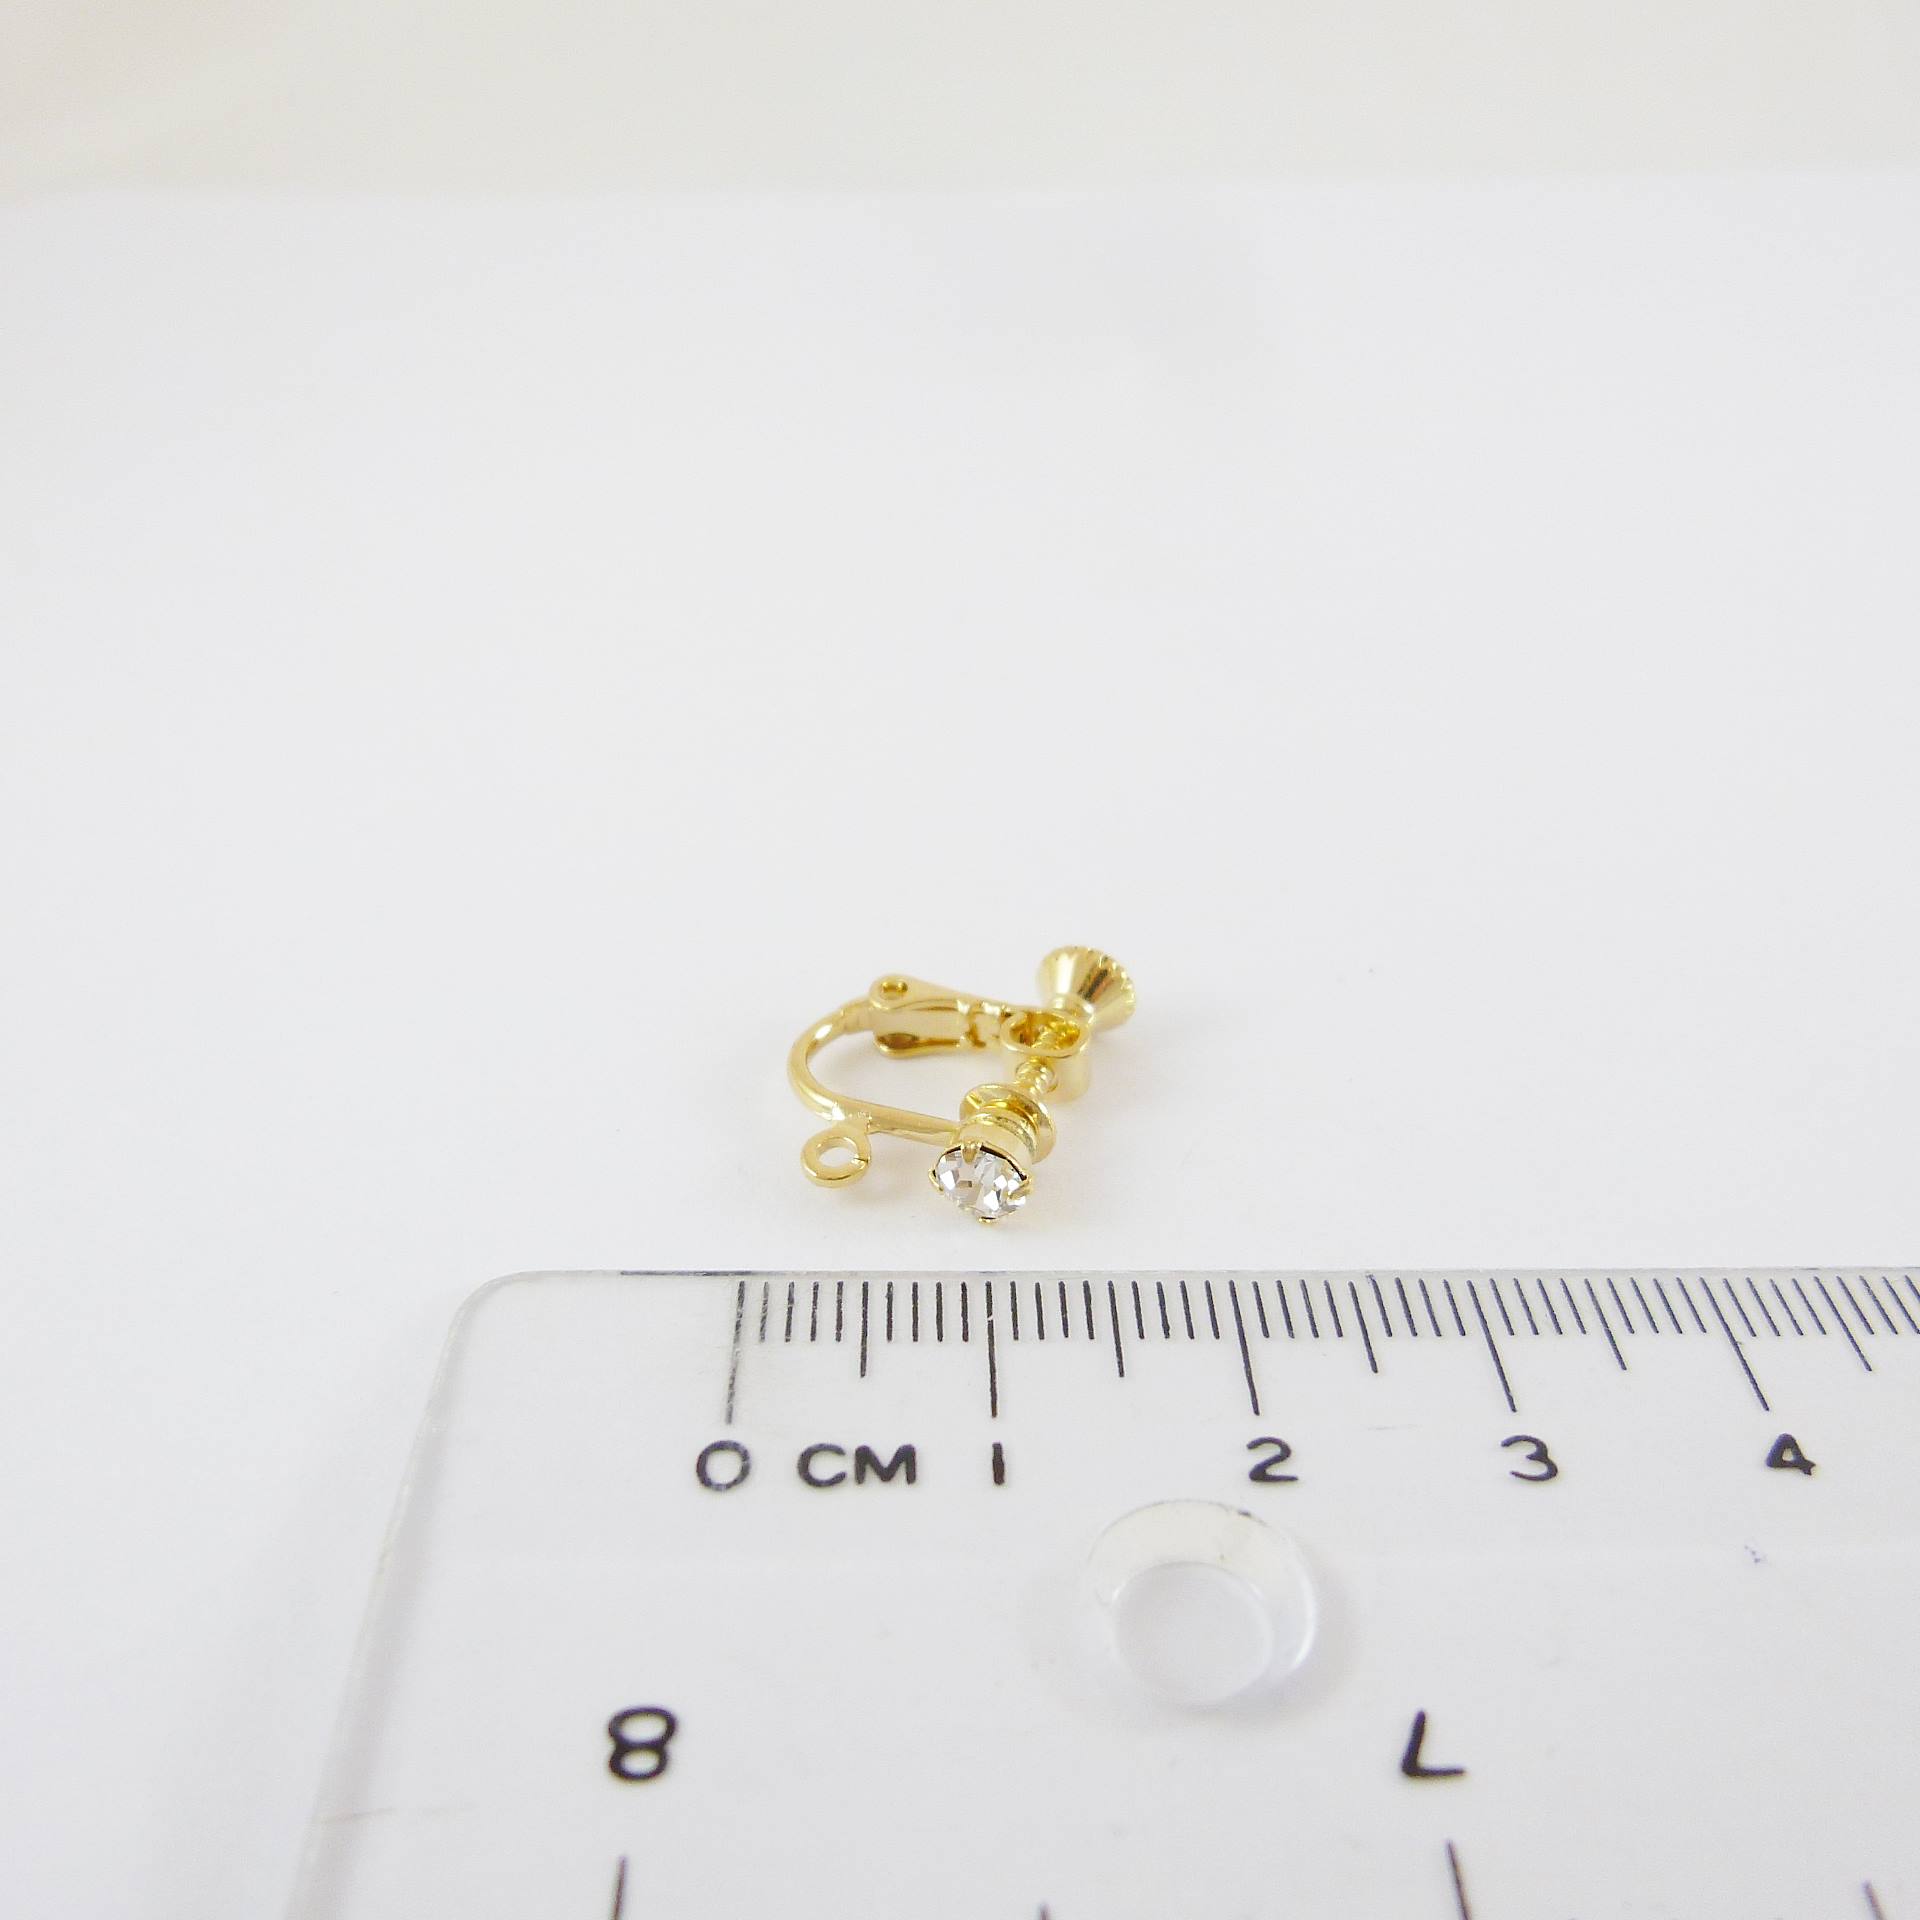 銅鍍金色圓形四爪鑲鑽彈簧耳夾-4mm